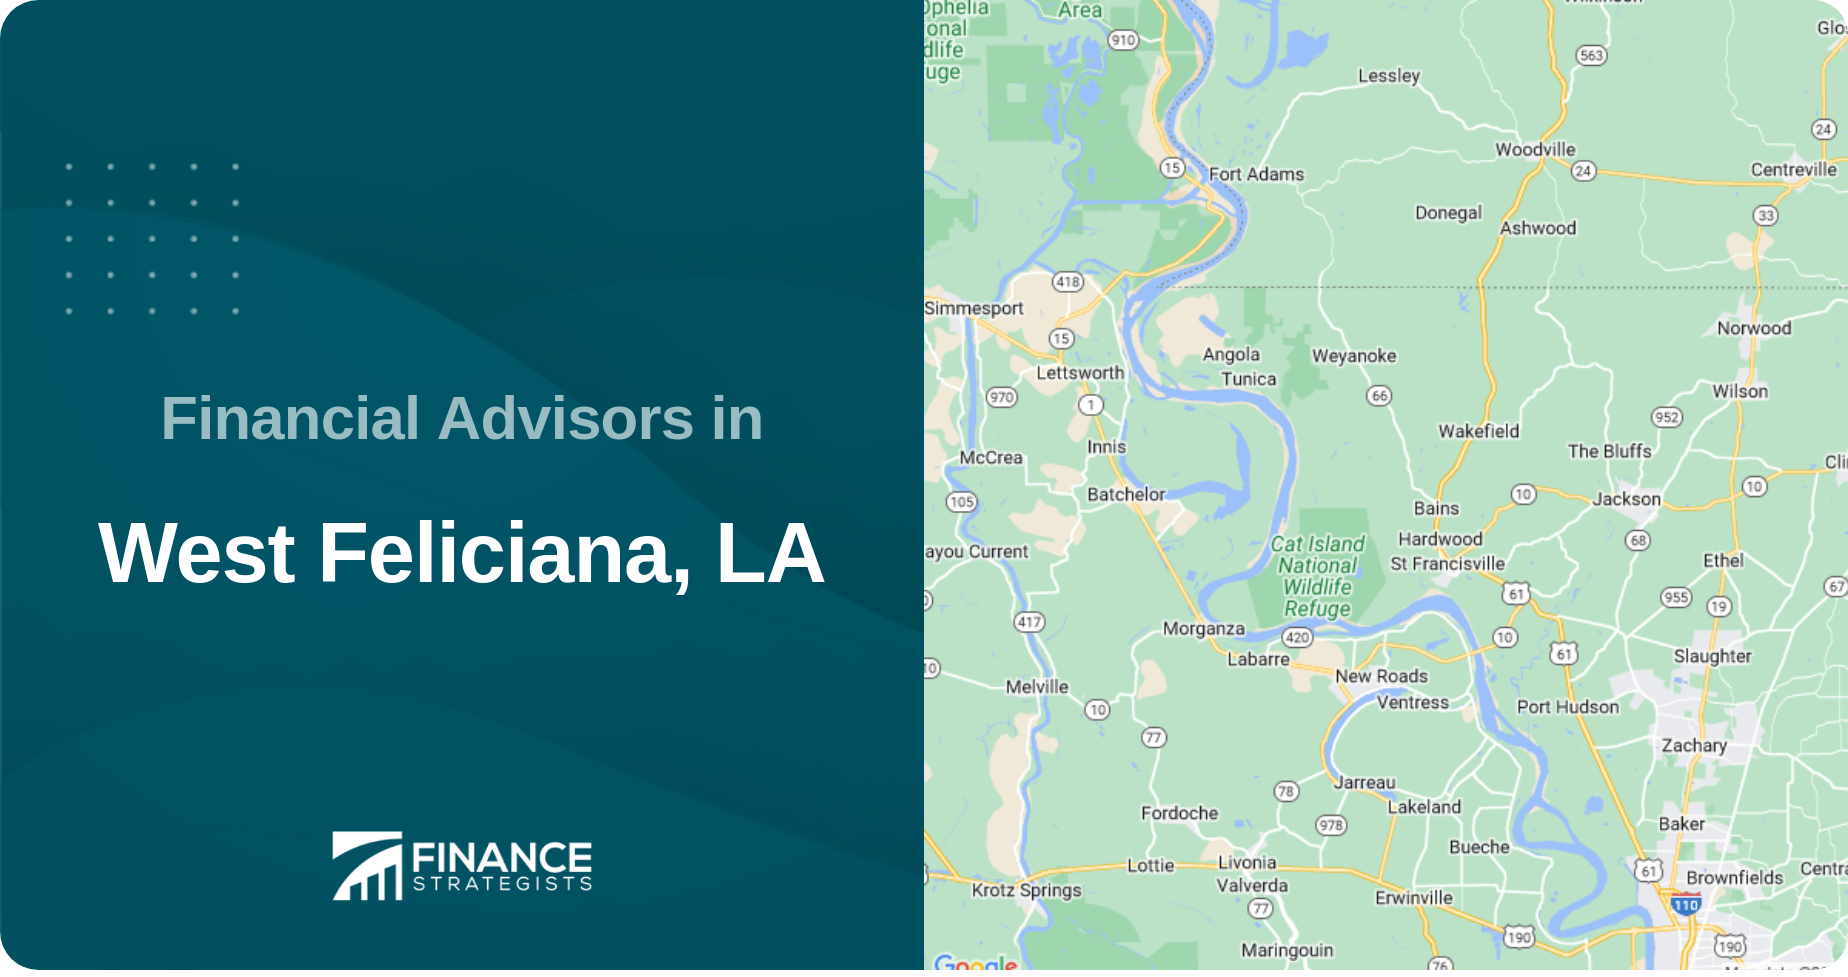 Financial Advisors in West Feliciana, LA